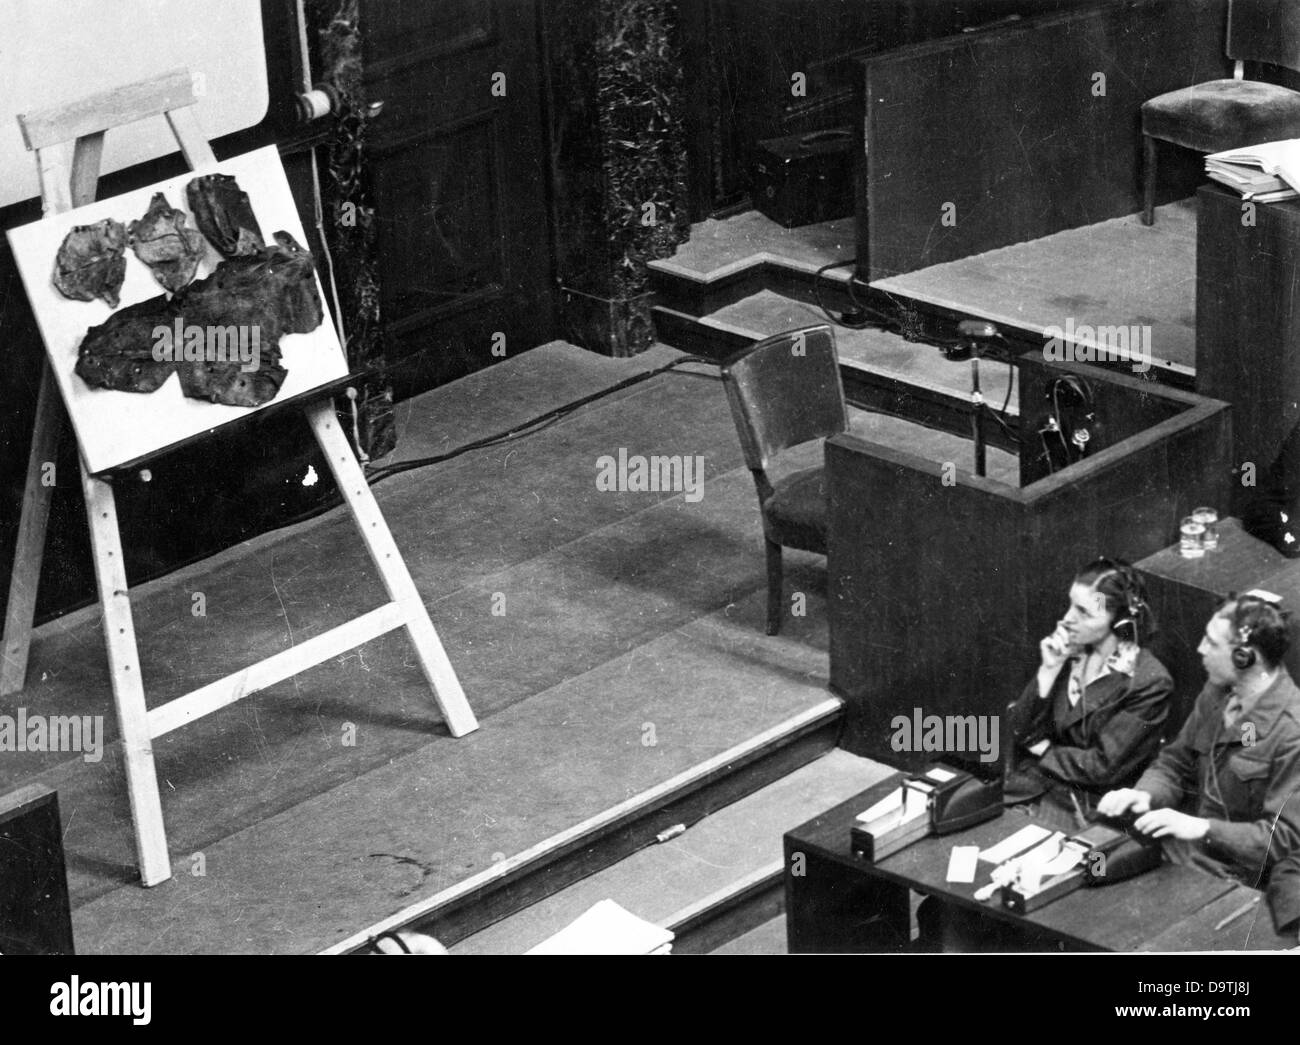 Un abat-jour faits de peau humaine est présenté comme élément de preuve pour les crimes du national-socialisme pendant le procès de Nuremberg à Nuremberg de 1946 à la Cour de Justice Militaire International. Photo : Yevgeny Khaldei Banque D'Images